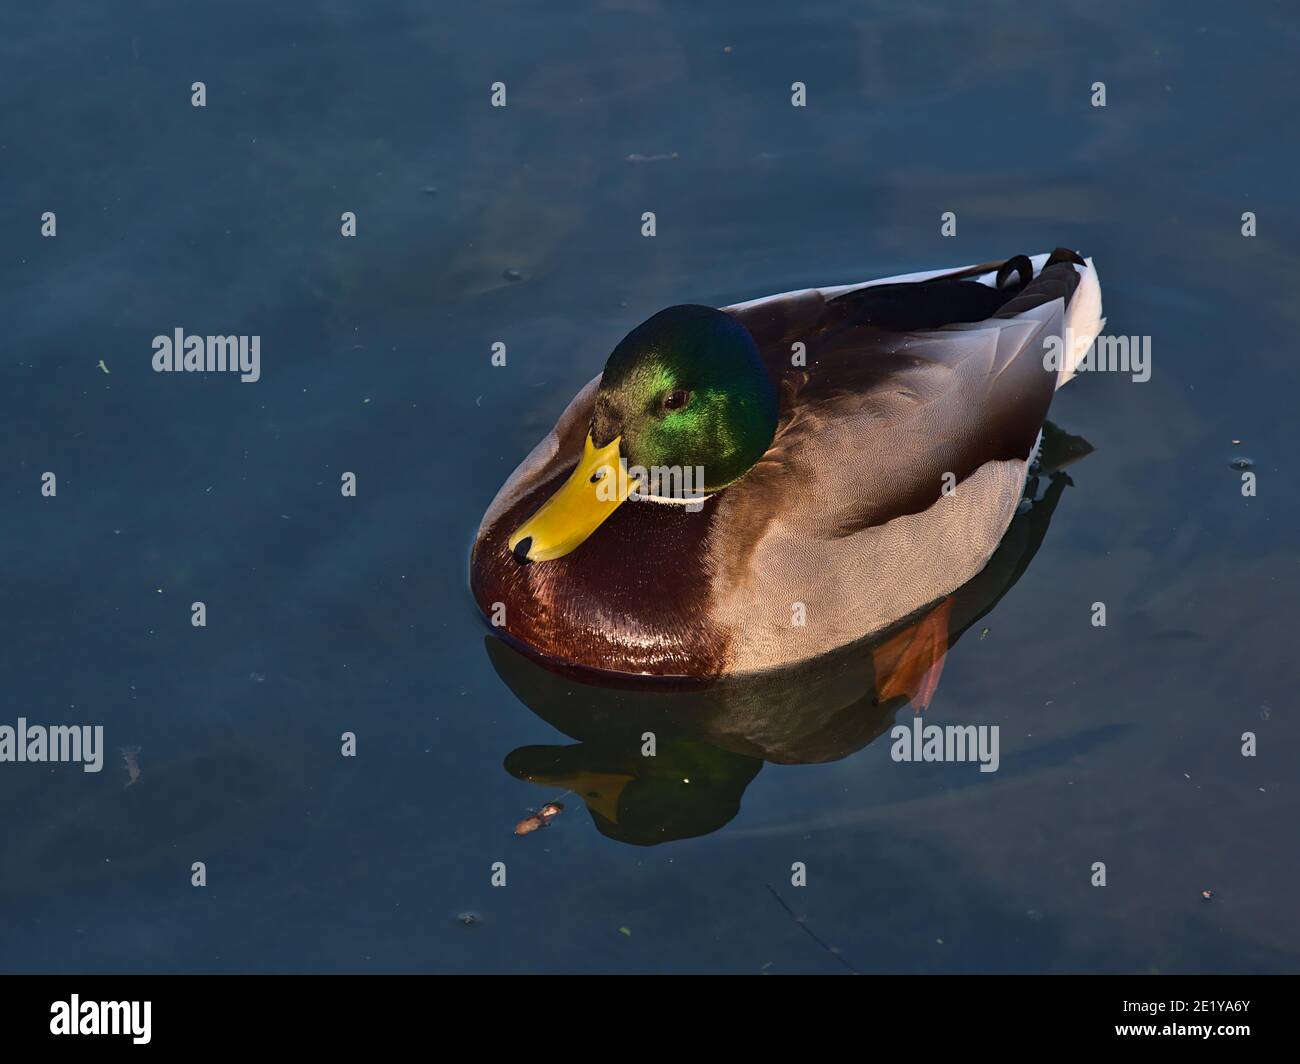 Vue en grand angle du canard colvert (anas platyrhynchos) avec belle tête vert chatoyante, bec jaune et plumage brun dans l'étang. Banque D'Images